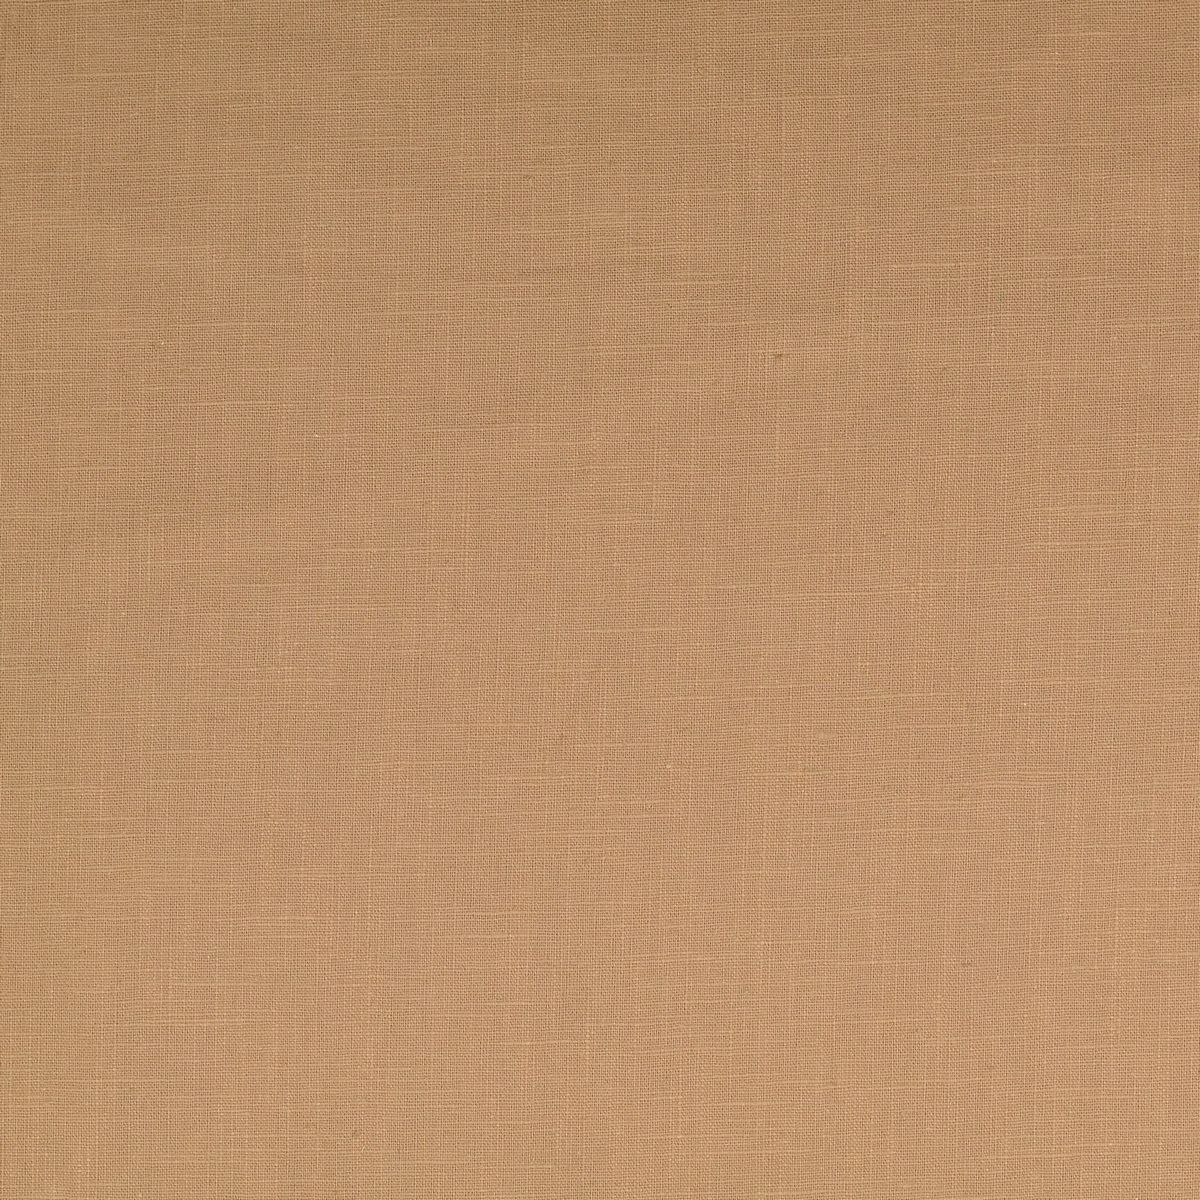 Hazelnut Fabric by Chatham Glyn